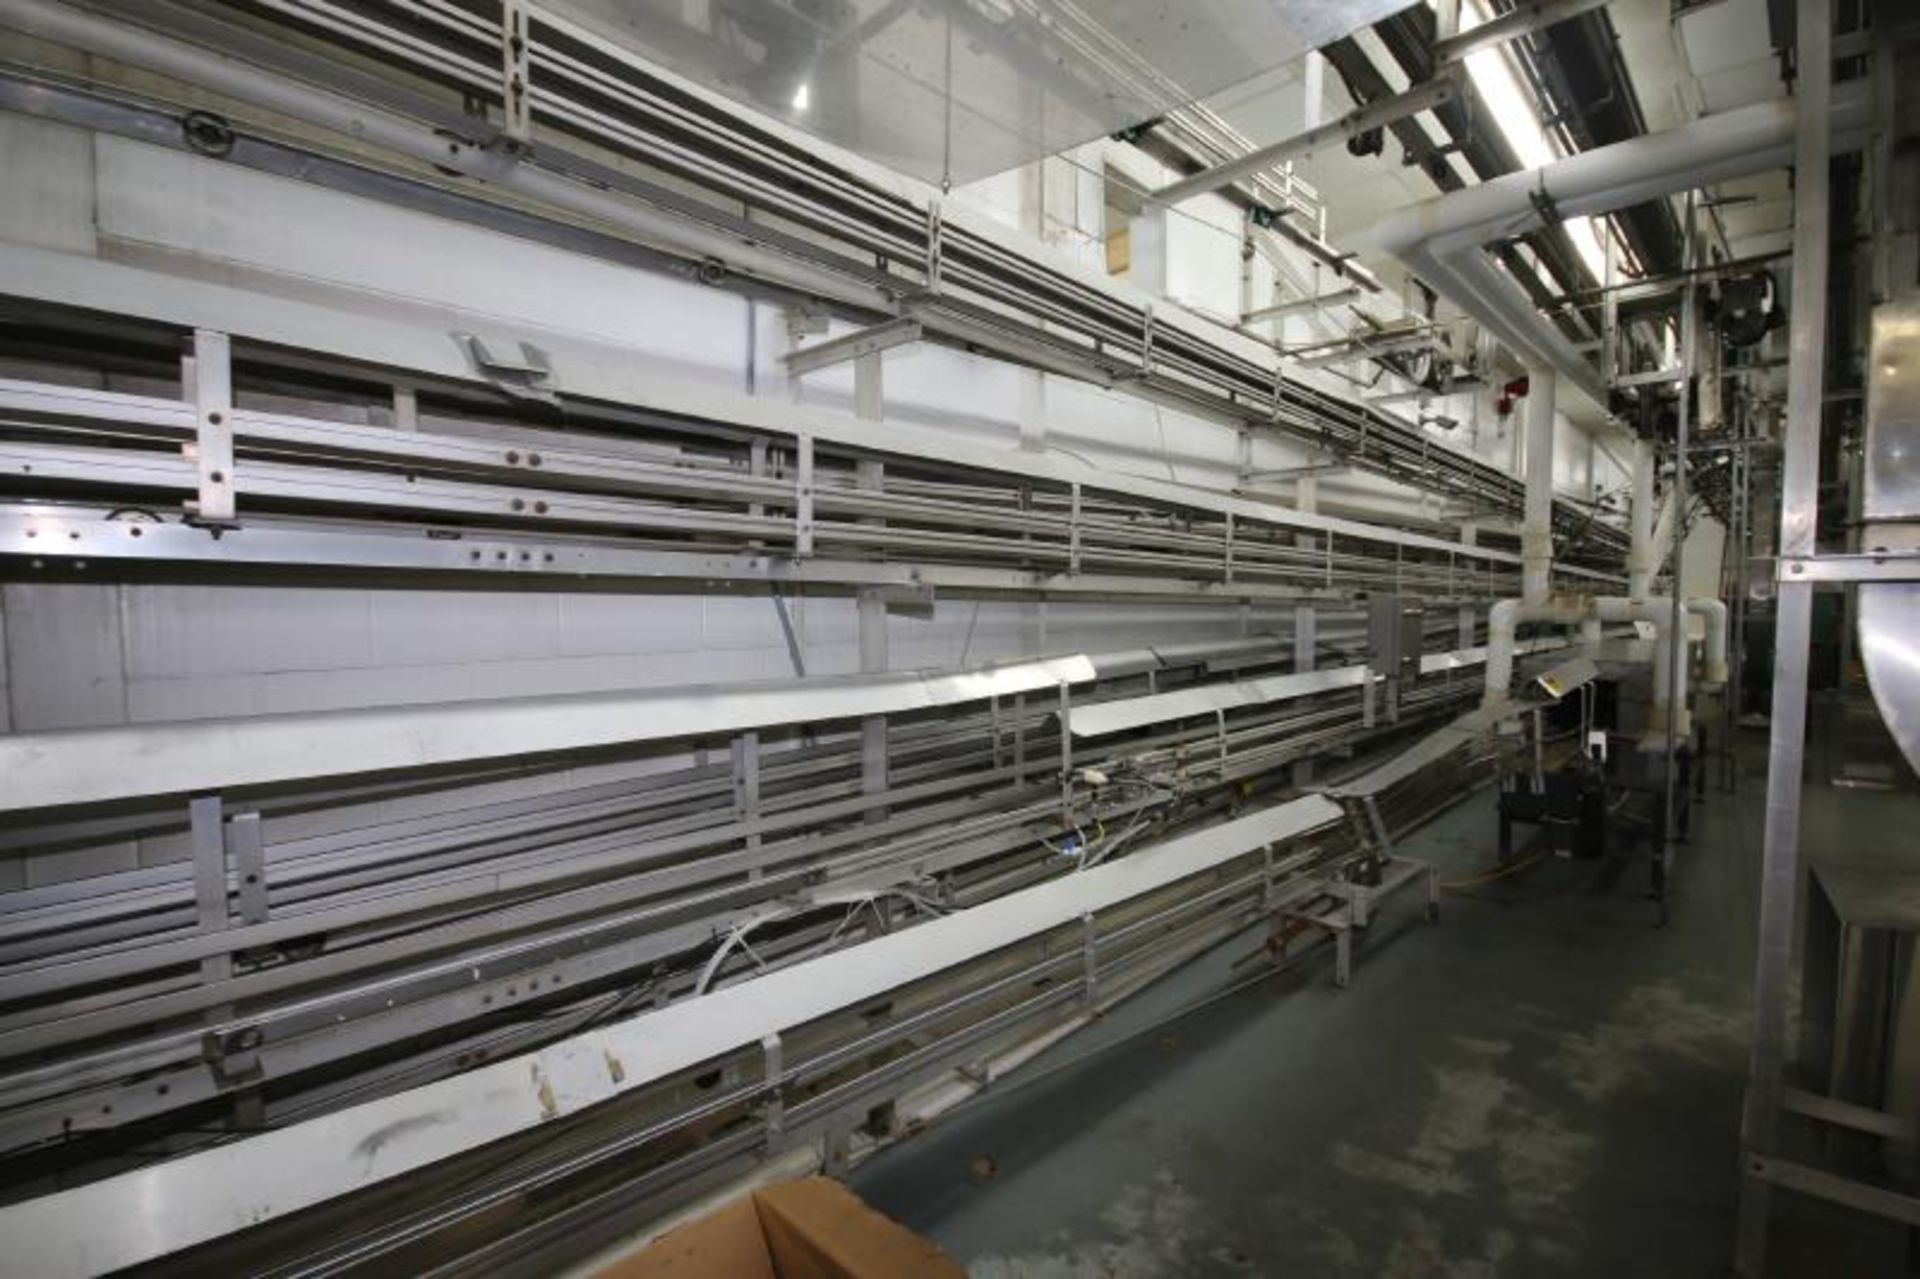 AIS Half Gal and Gal. Aluminum Jug Conveyor System - Image 2 of 4